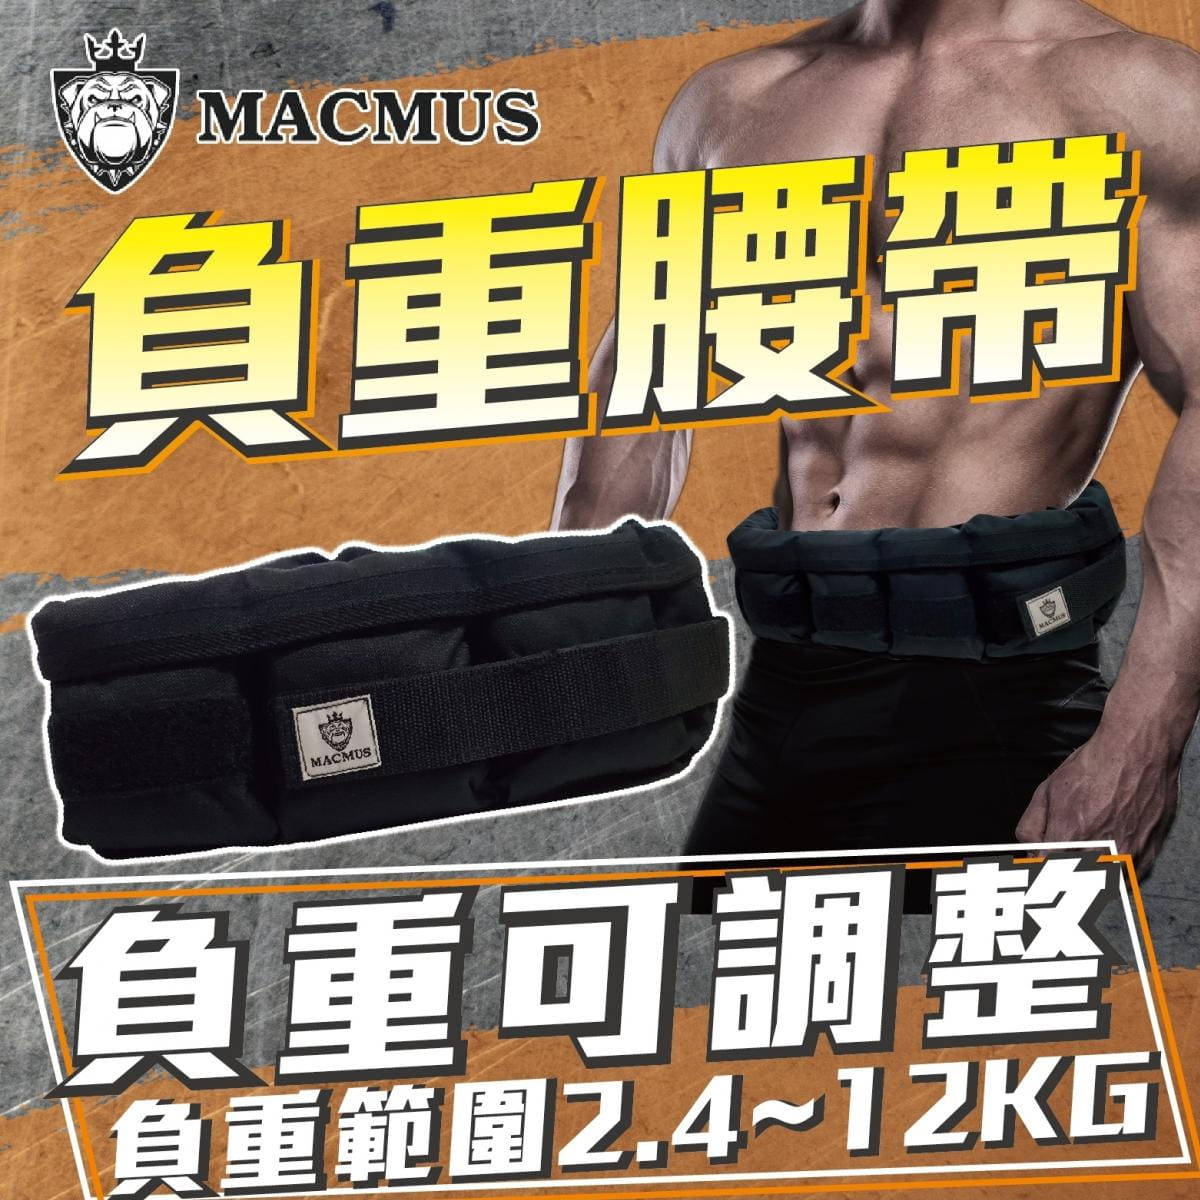 【MACMUS】2.4公斤負重腰帶｜8格式可調整重訓腰帶｜強化核心肌群鍛鍊腰部肌肉 0